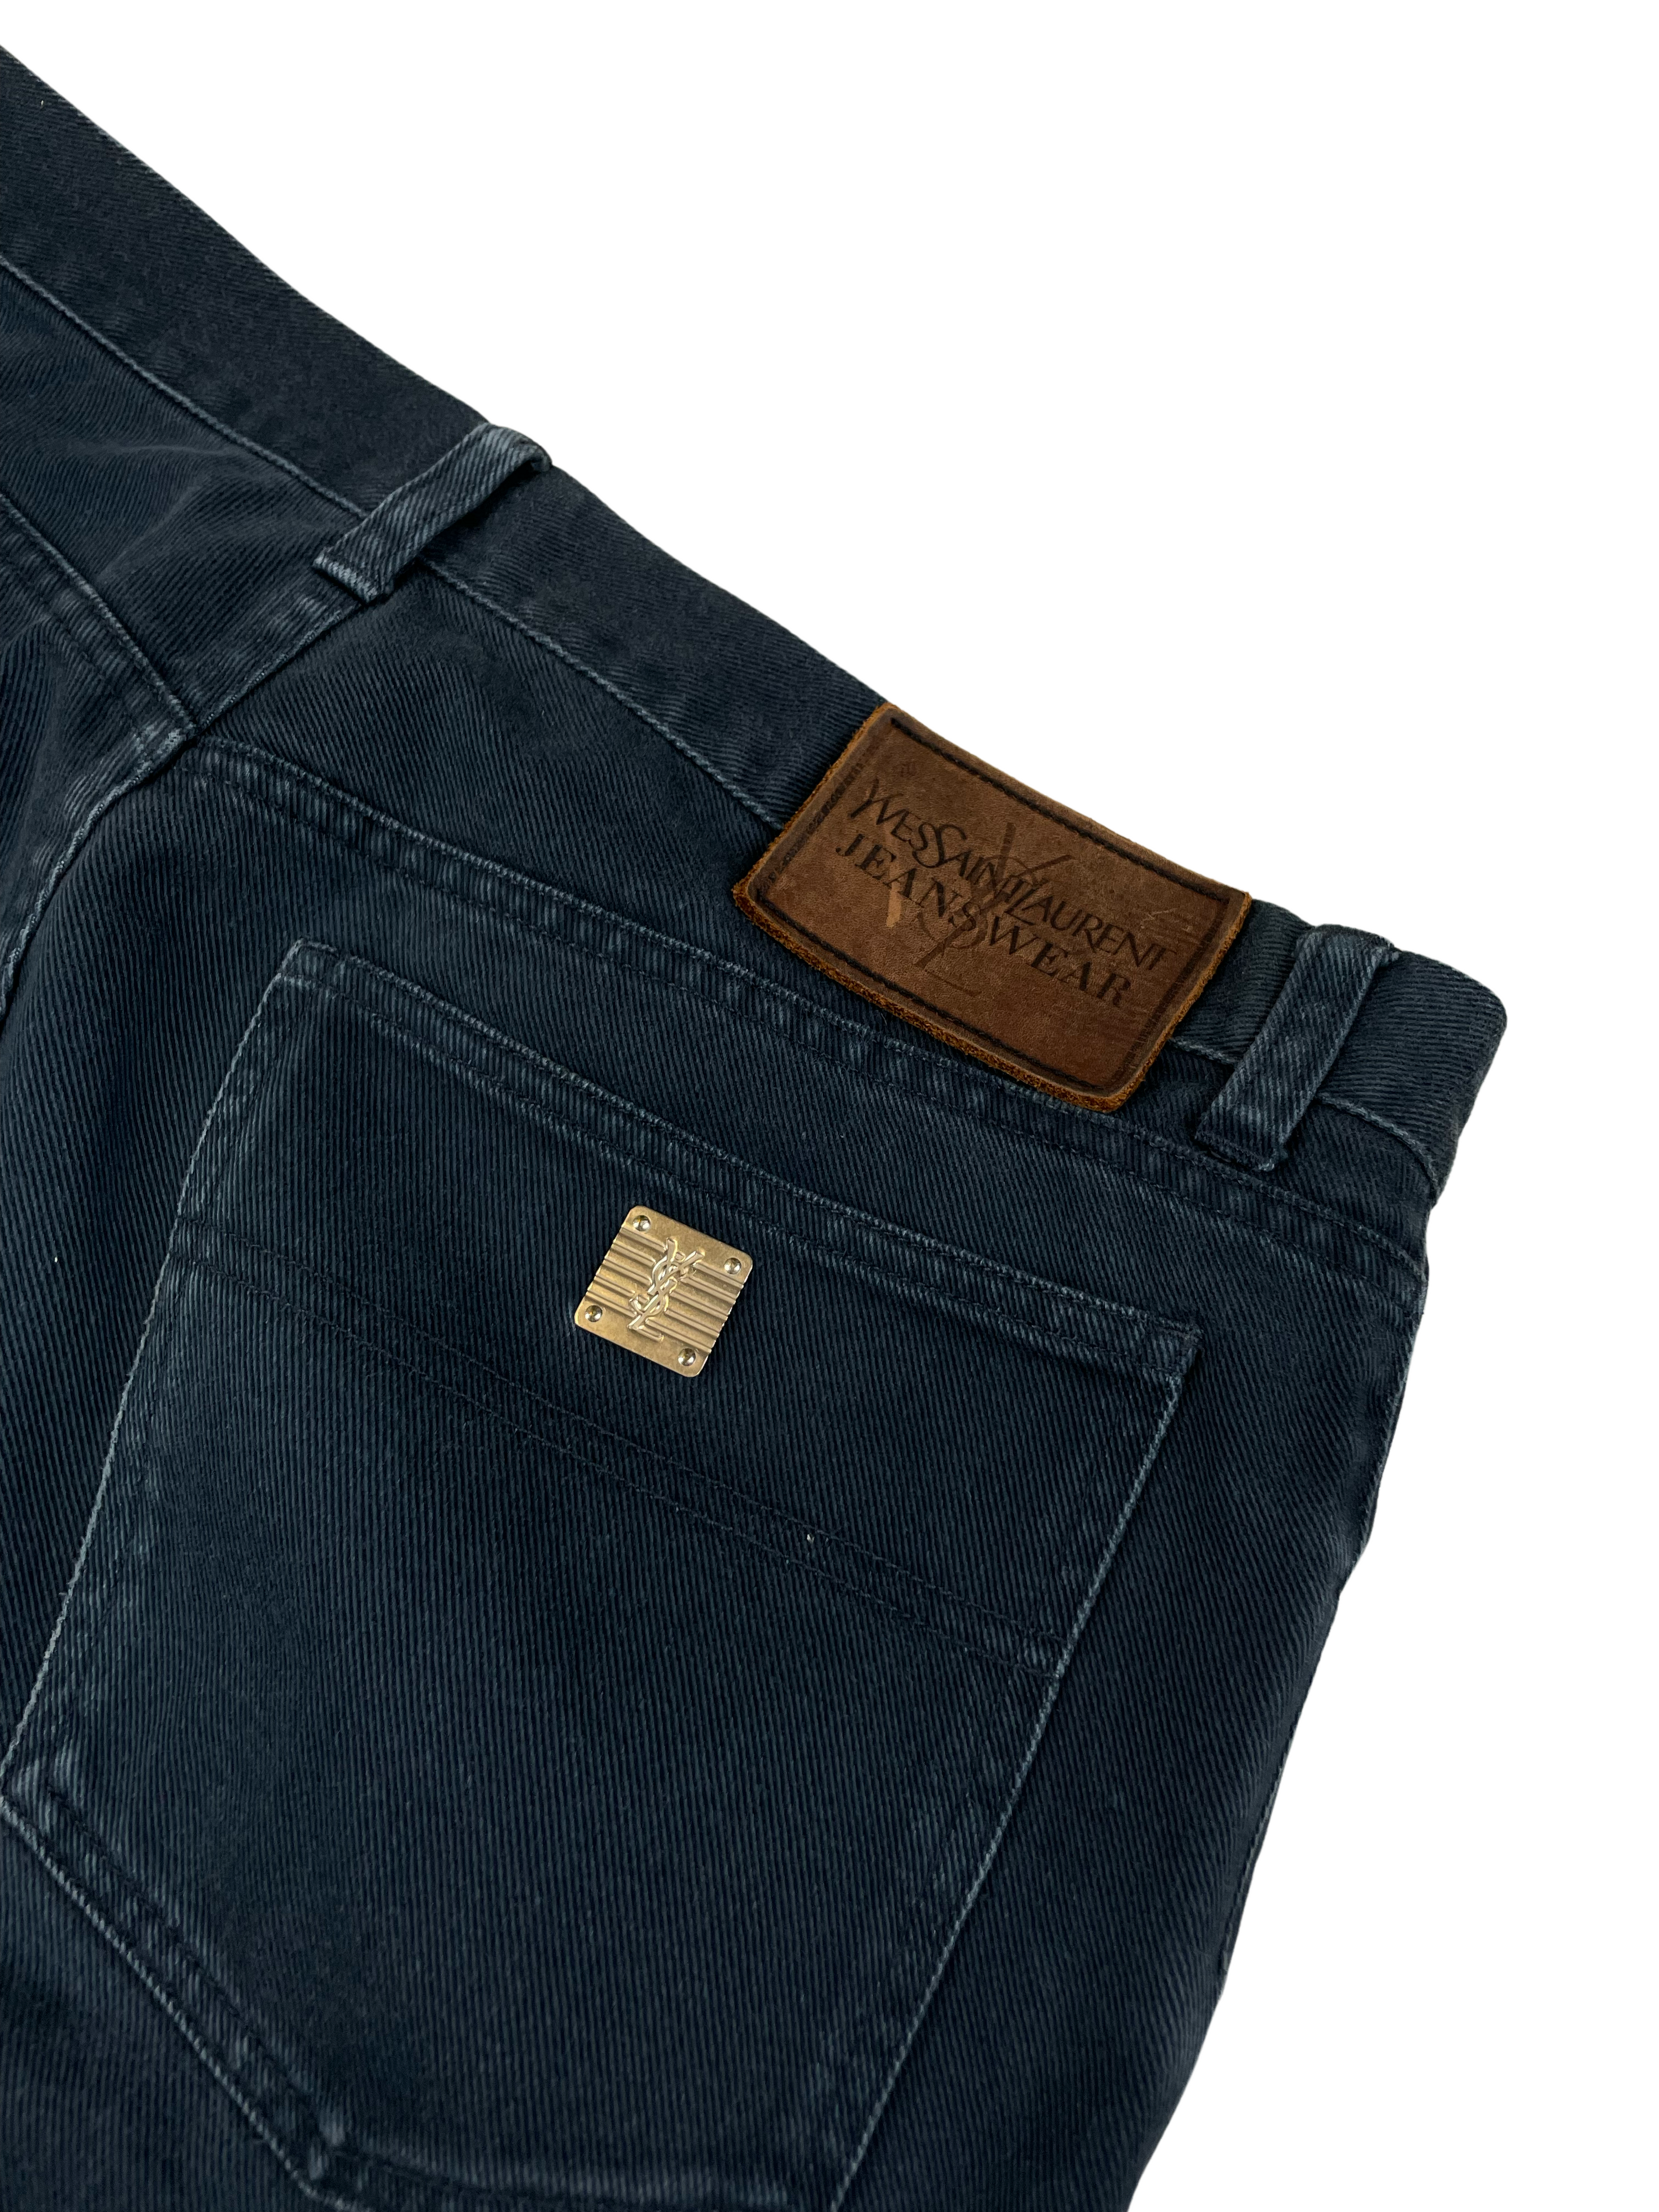 Vintage Yves Saint Laurent Loose Fit Jeans (36/32 ; L/XL)